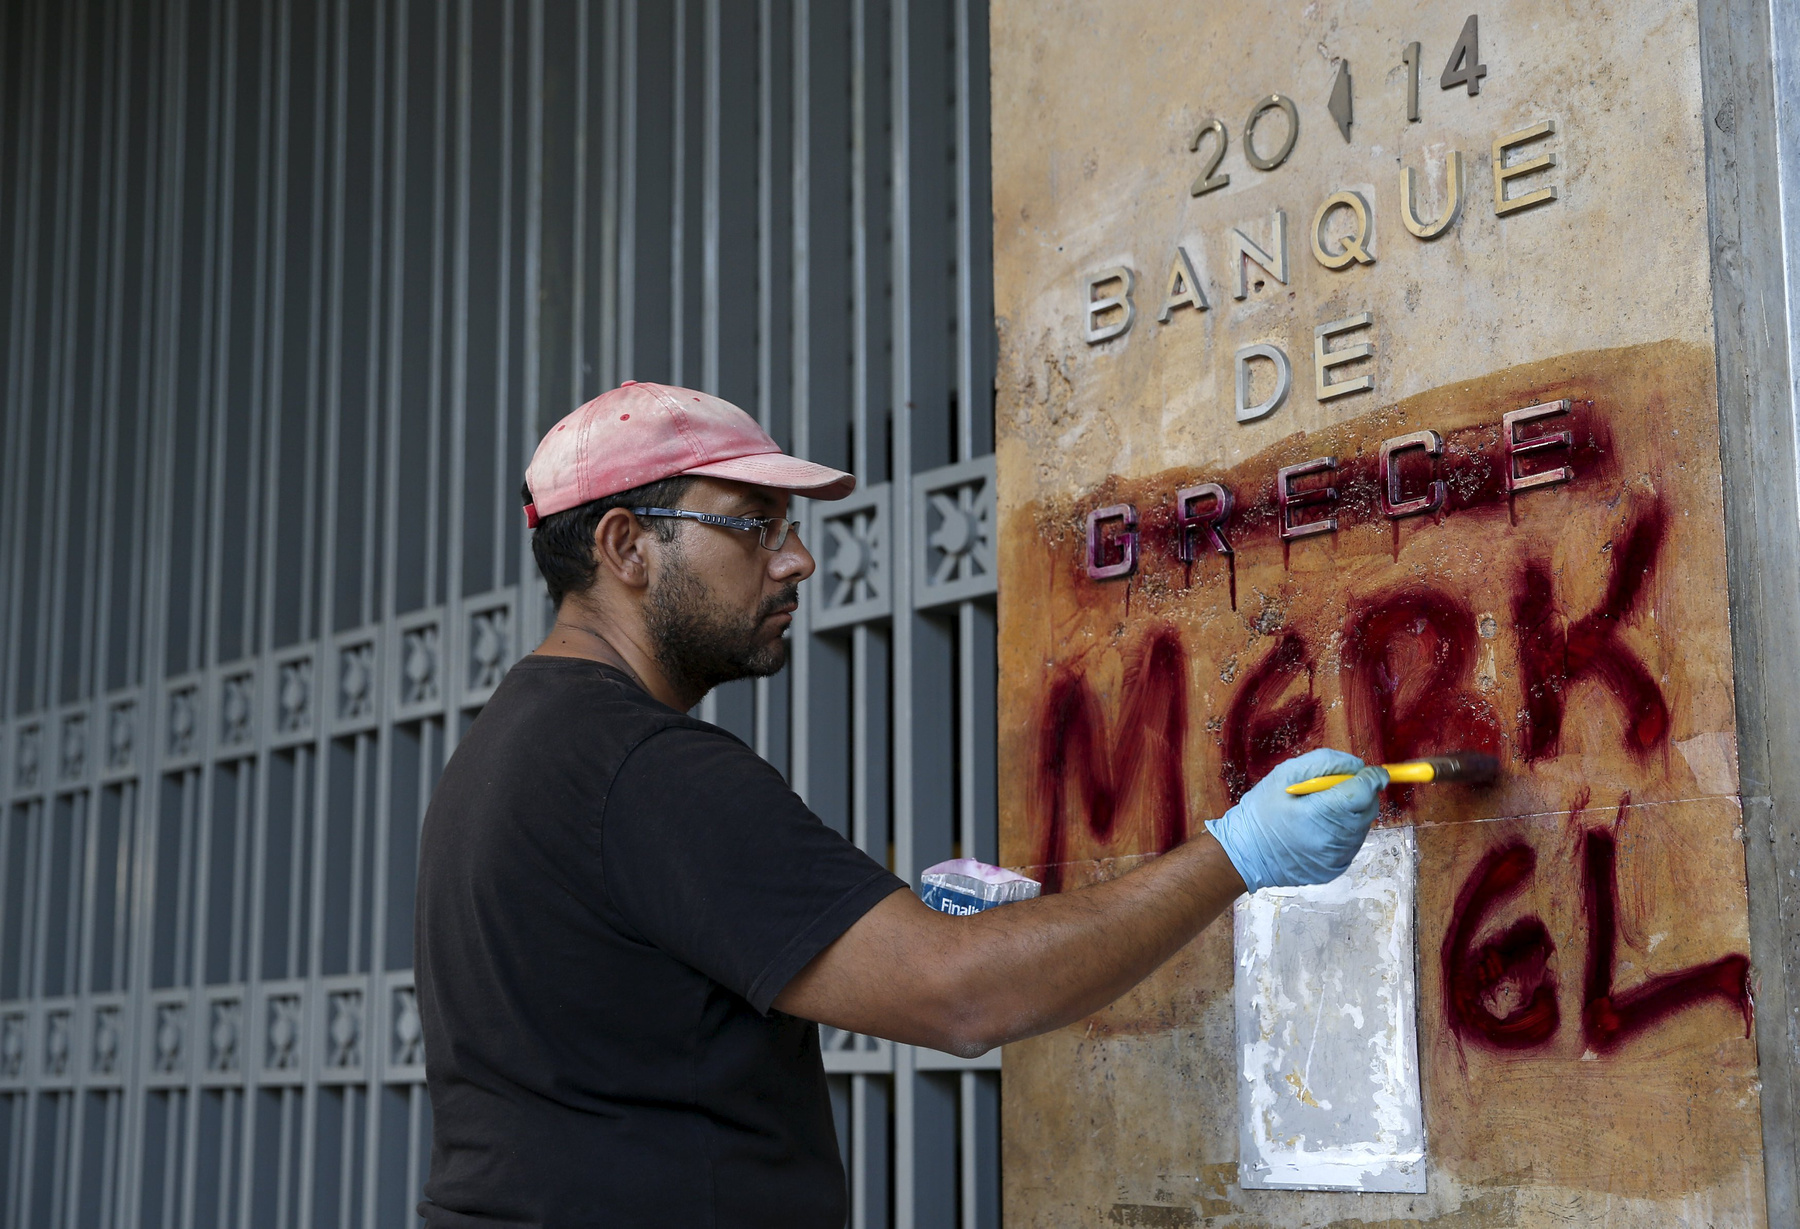 A görög utcai művészeket is nyilván foglalkoztatta, hogy az országuk egyre kilátástalanabbul sodródik a csőd felé egy ideje. A bizonytalan jövőtől való félelem, a népszavazás, a Merkeléktől való függés vagy az eurózónából való kilépés közeli lehetősége kerül elő ezeken graffitiken. A képek június-júliusban készültek. 